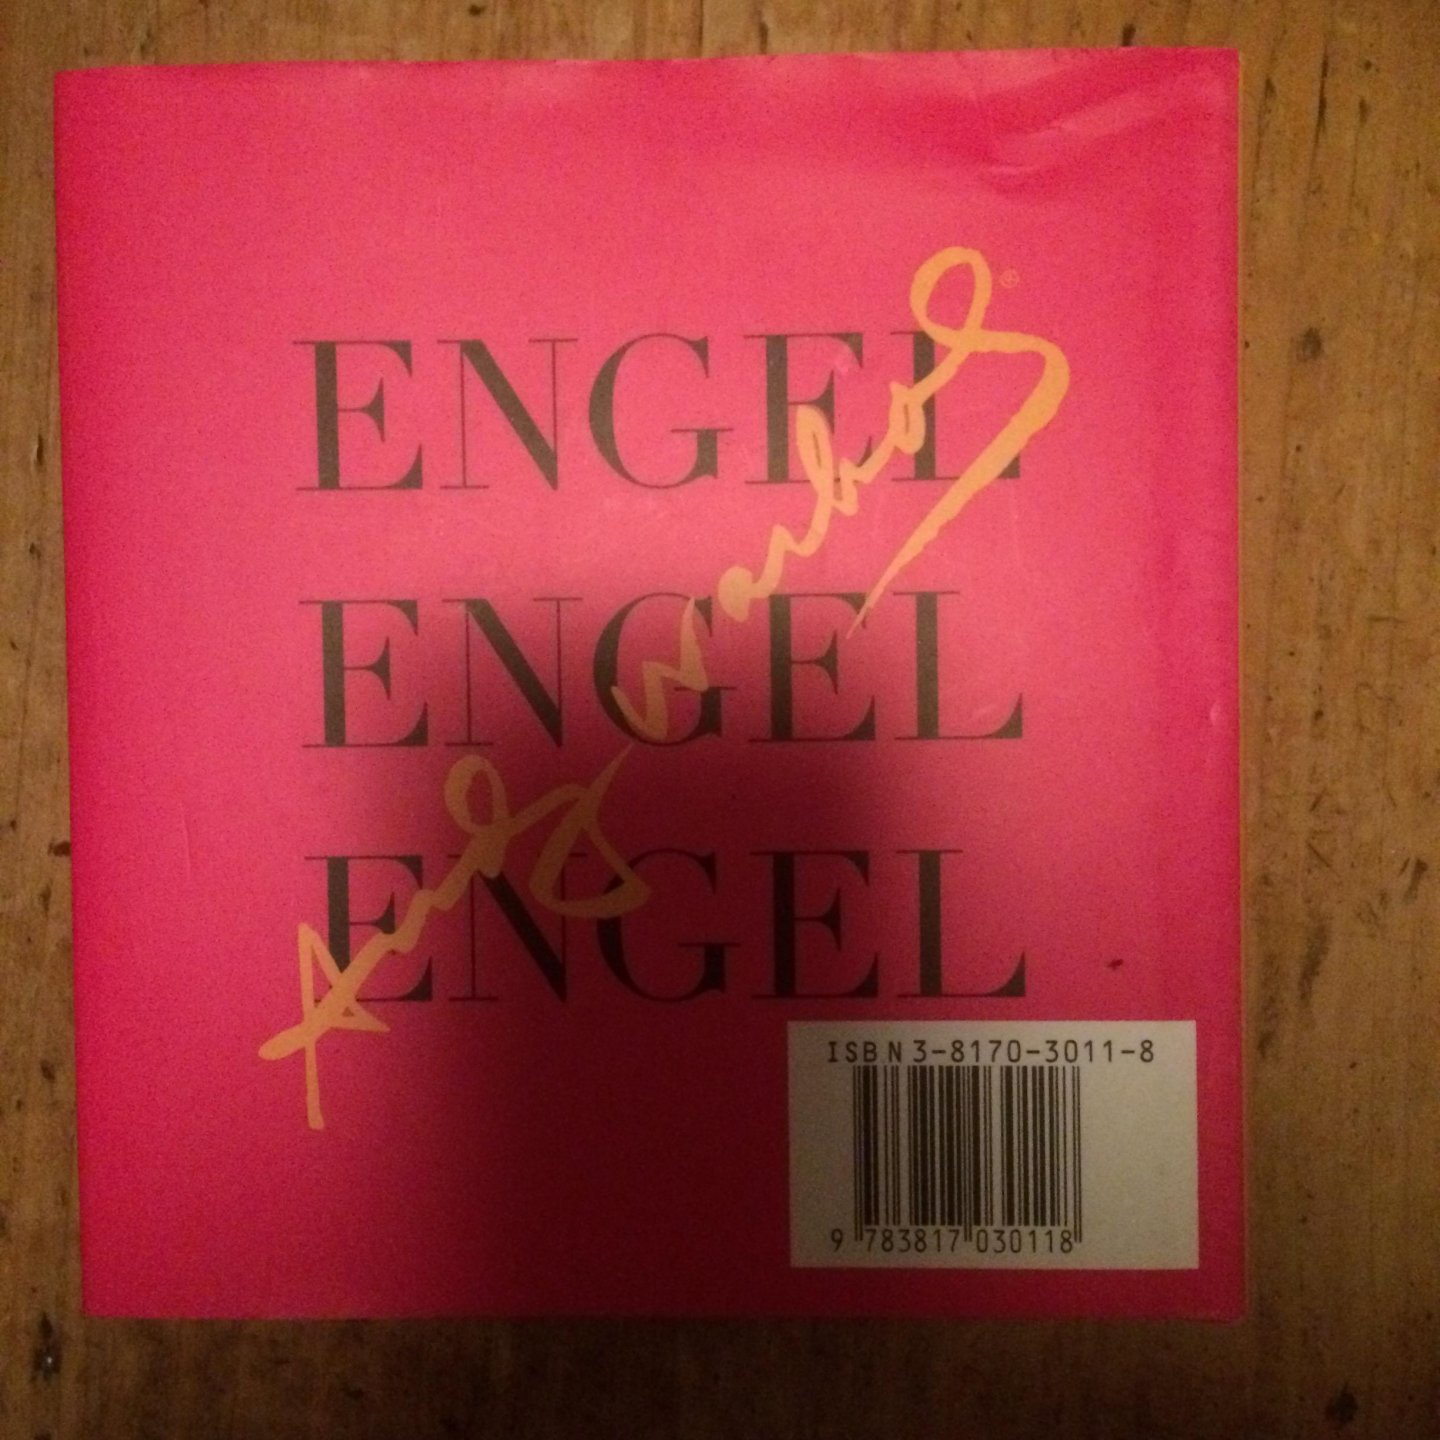 Warhol, Andy - Engel, Engel, Engel